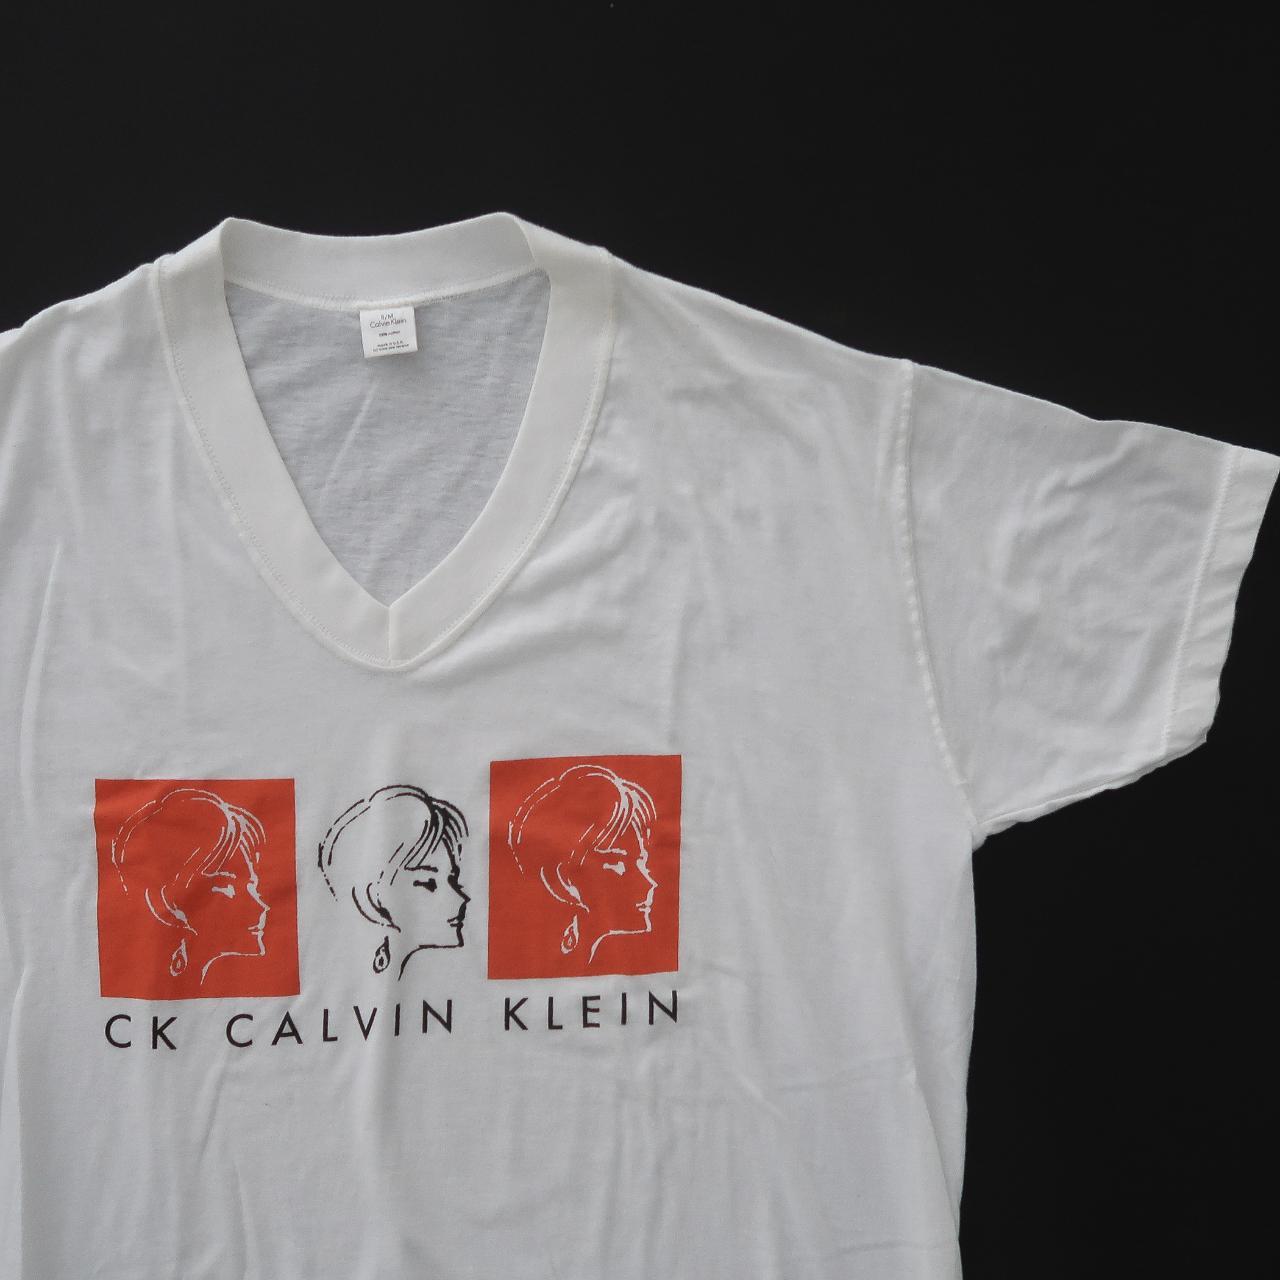 Vintage 90s Calvin sleep - Klein shirt. Depop Rad... retro